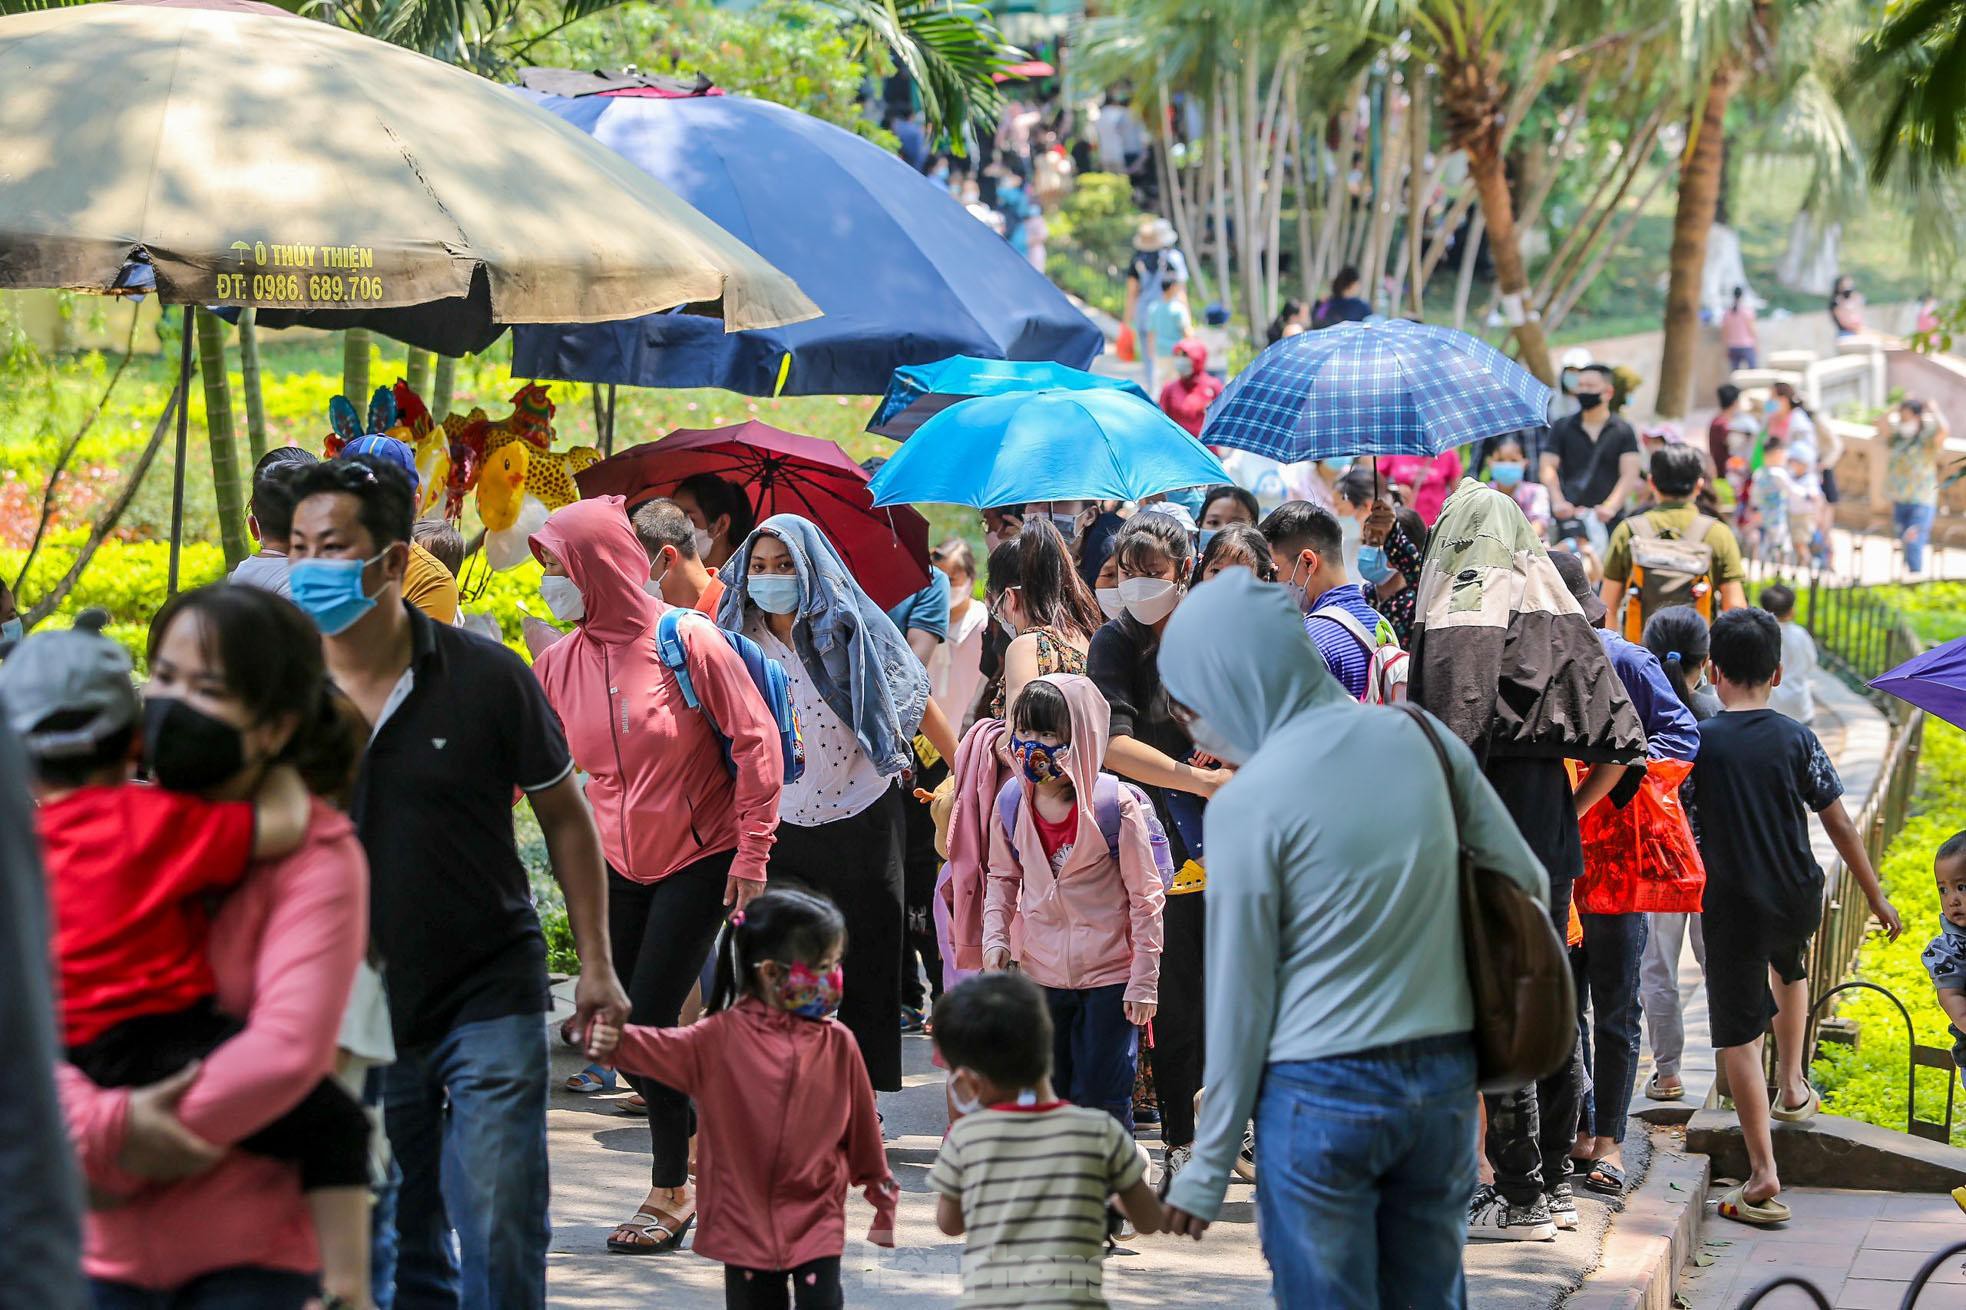 Ngàn người đổ về vườn thú Hà Nội trong ngày đầu nghỉ lễ - Ảnh 3.